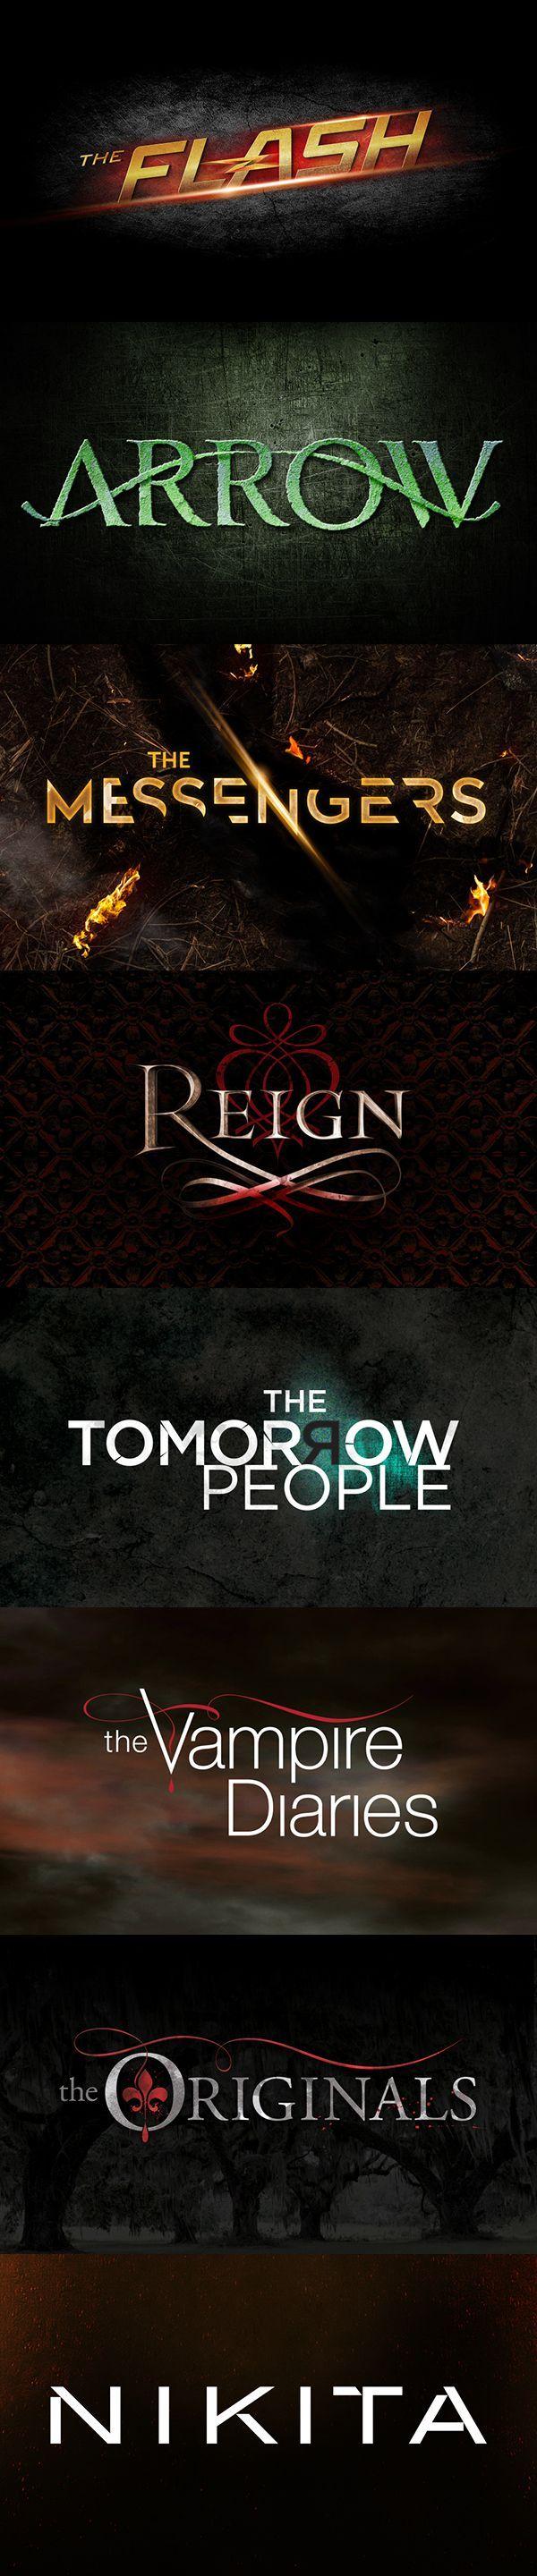 Arrow TV Show Logo - CW TV Show Logo Design Series 1: The Flash, Arrow, The Messengers ...